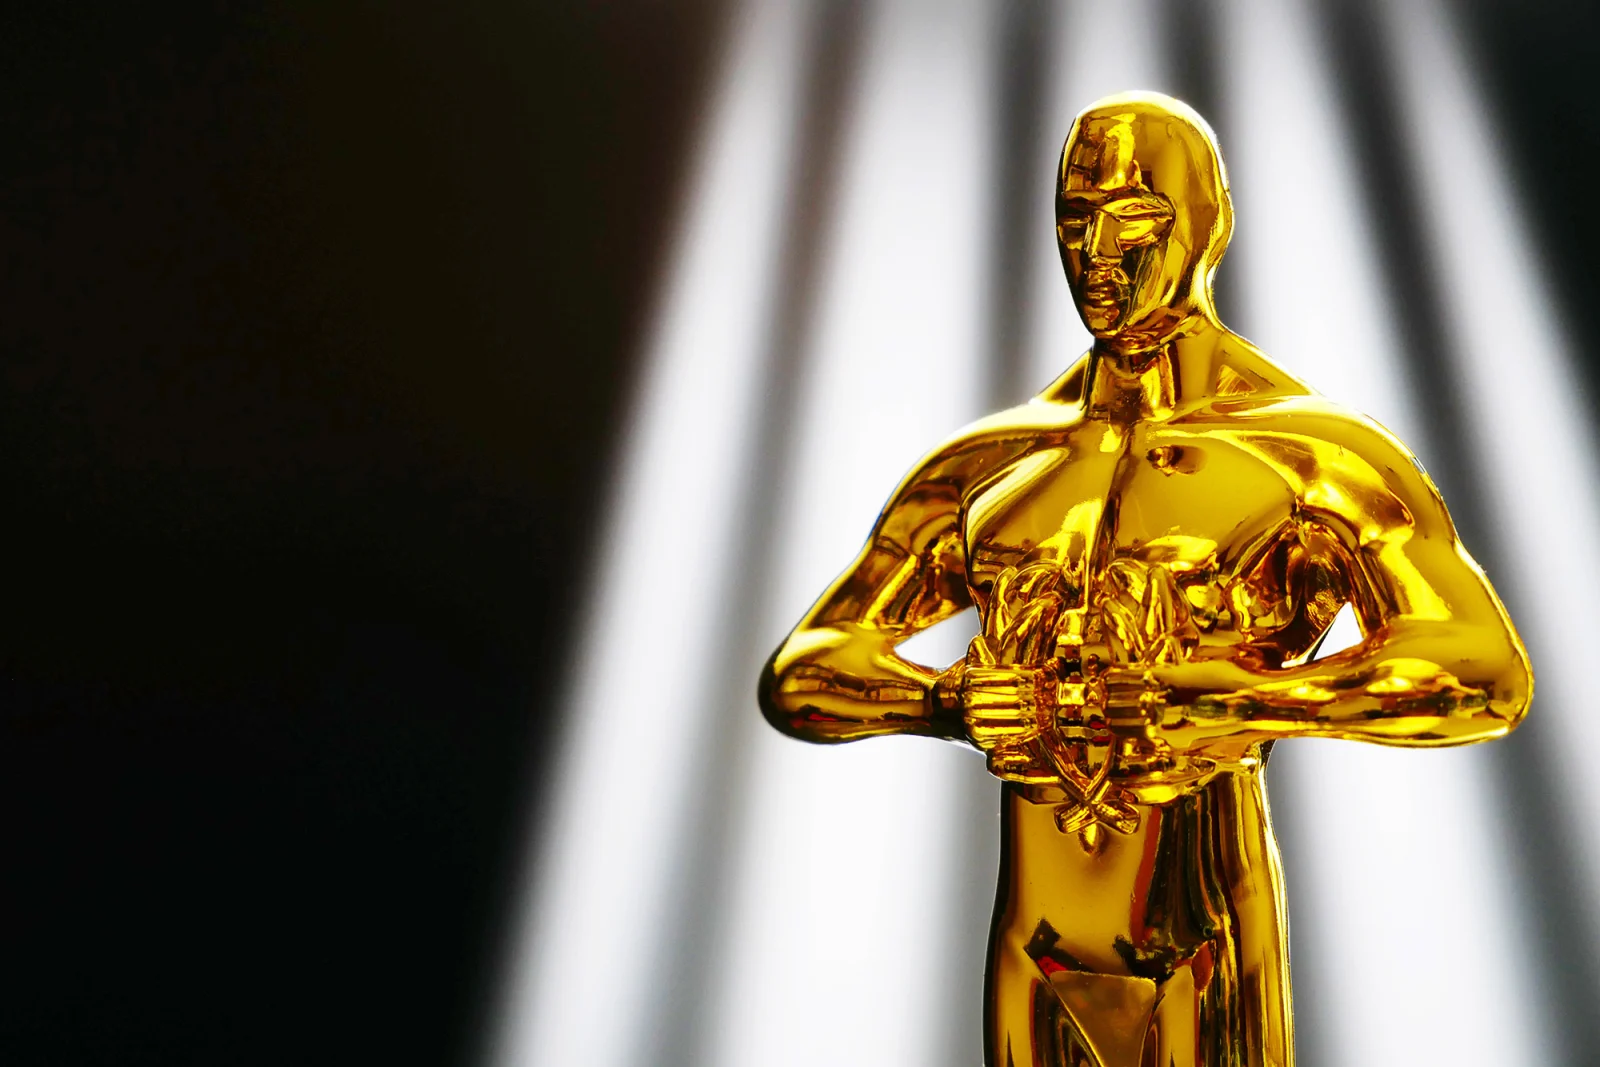 Oscar Ödülleri'nde bir ilk: Yeni kategori eklendi!